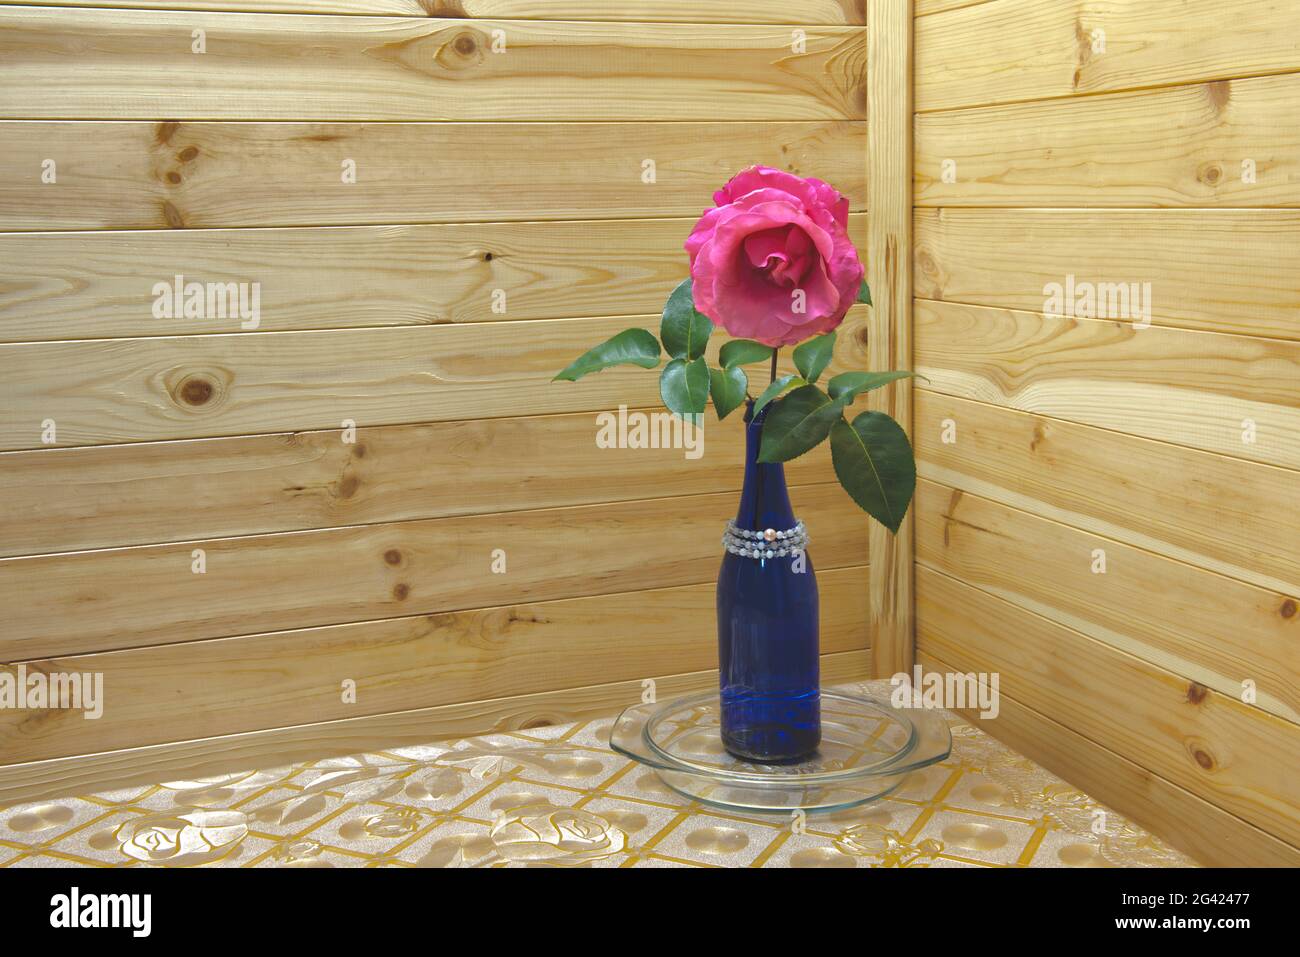 Une rose dans la bouteille bleue sur la table de cuisine dans le coin intérieur sur fond de mur de doublure en bois. Banque D'Images